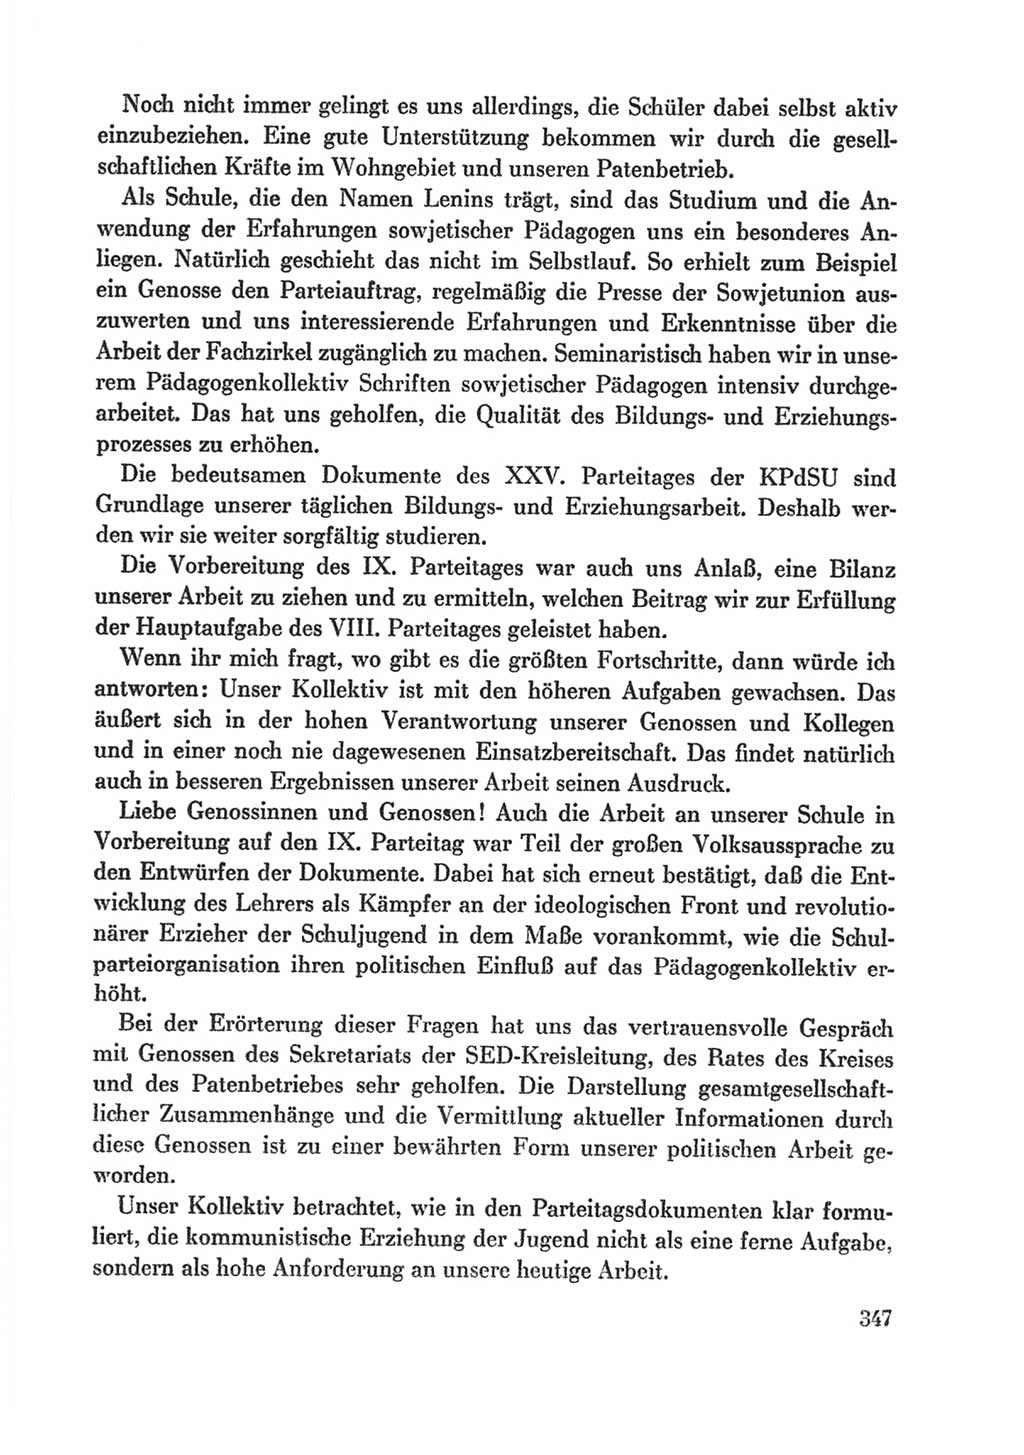 Protokoll der Verhandlungen des Ⅸ. Parteitages der Sozialistischen Einheitspartei Deutschlands (SED) [Deutsche Demokratische Republik (DDR)] 1976, Band 1, Seite 347 (Prot. Verh. Ⅸ. PT SED DDR 1976, Bd. 1, S. 347)